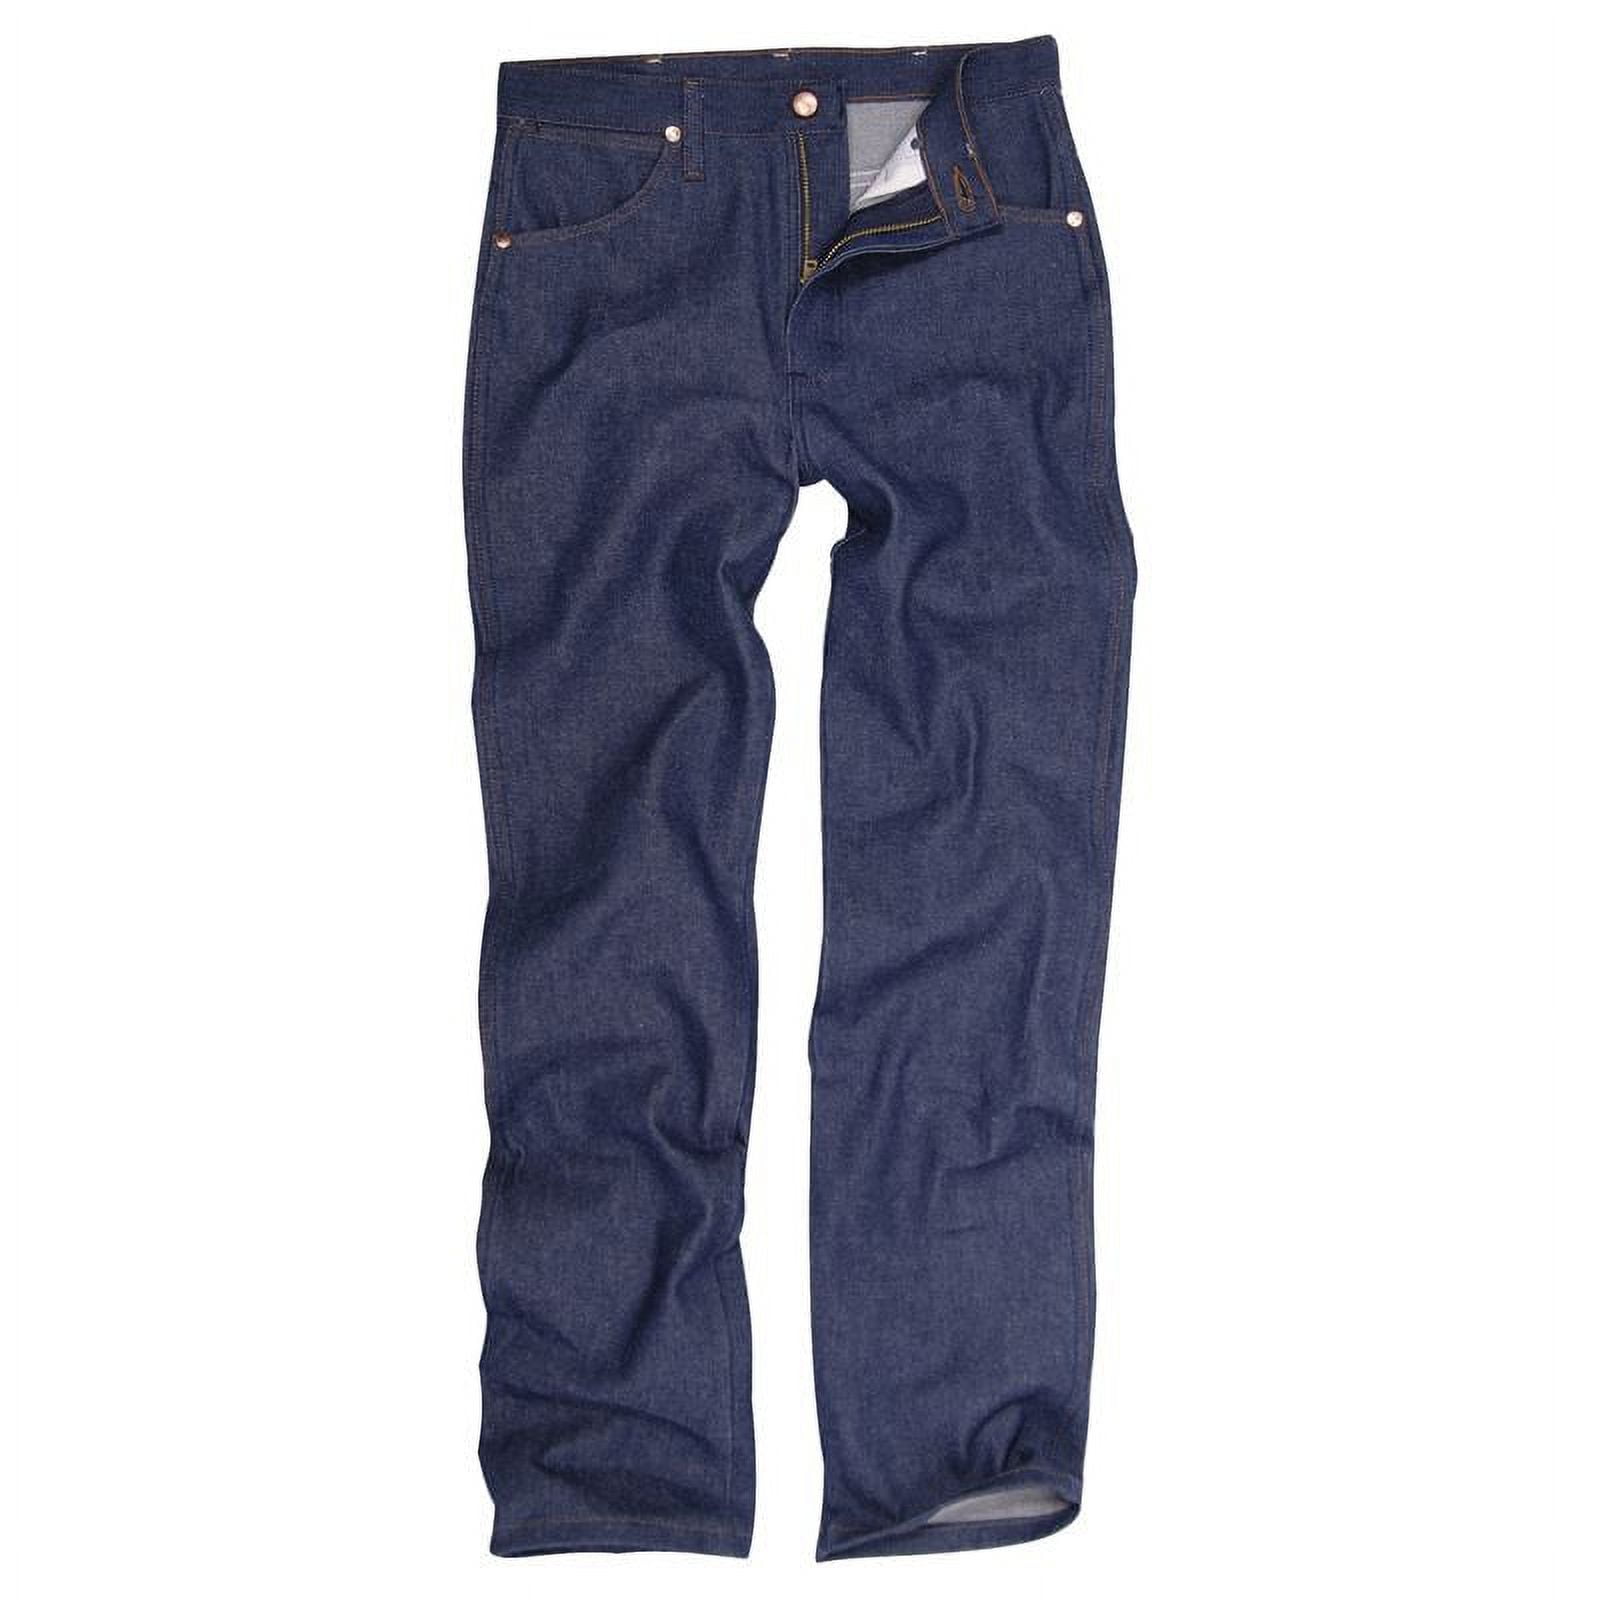 Wrangler Men's 936 Cowboy Cut Rigid Slim Fit Jeans Indigo 34W x 40L US ...